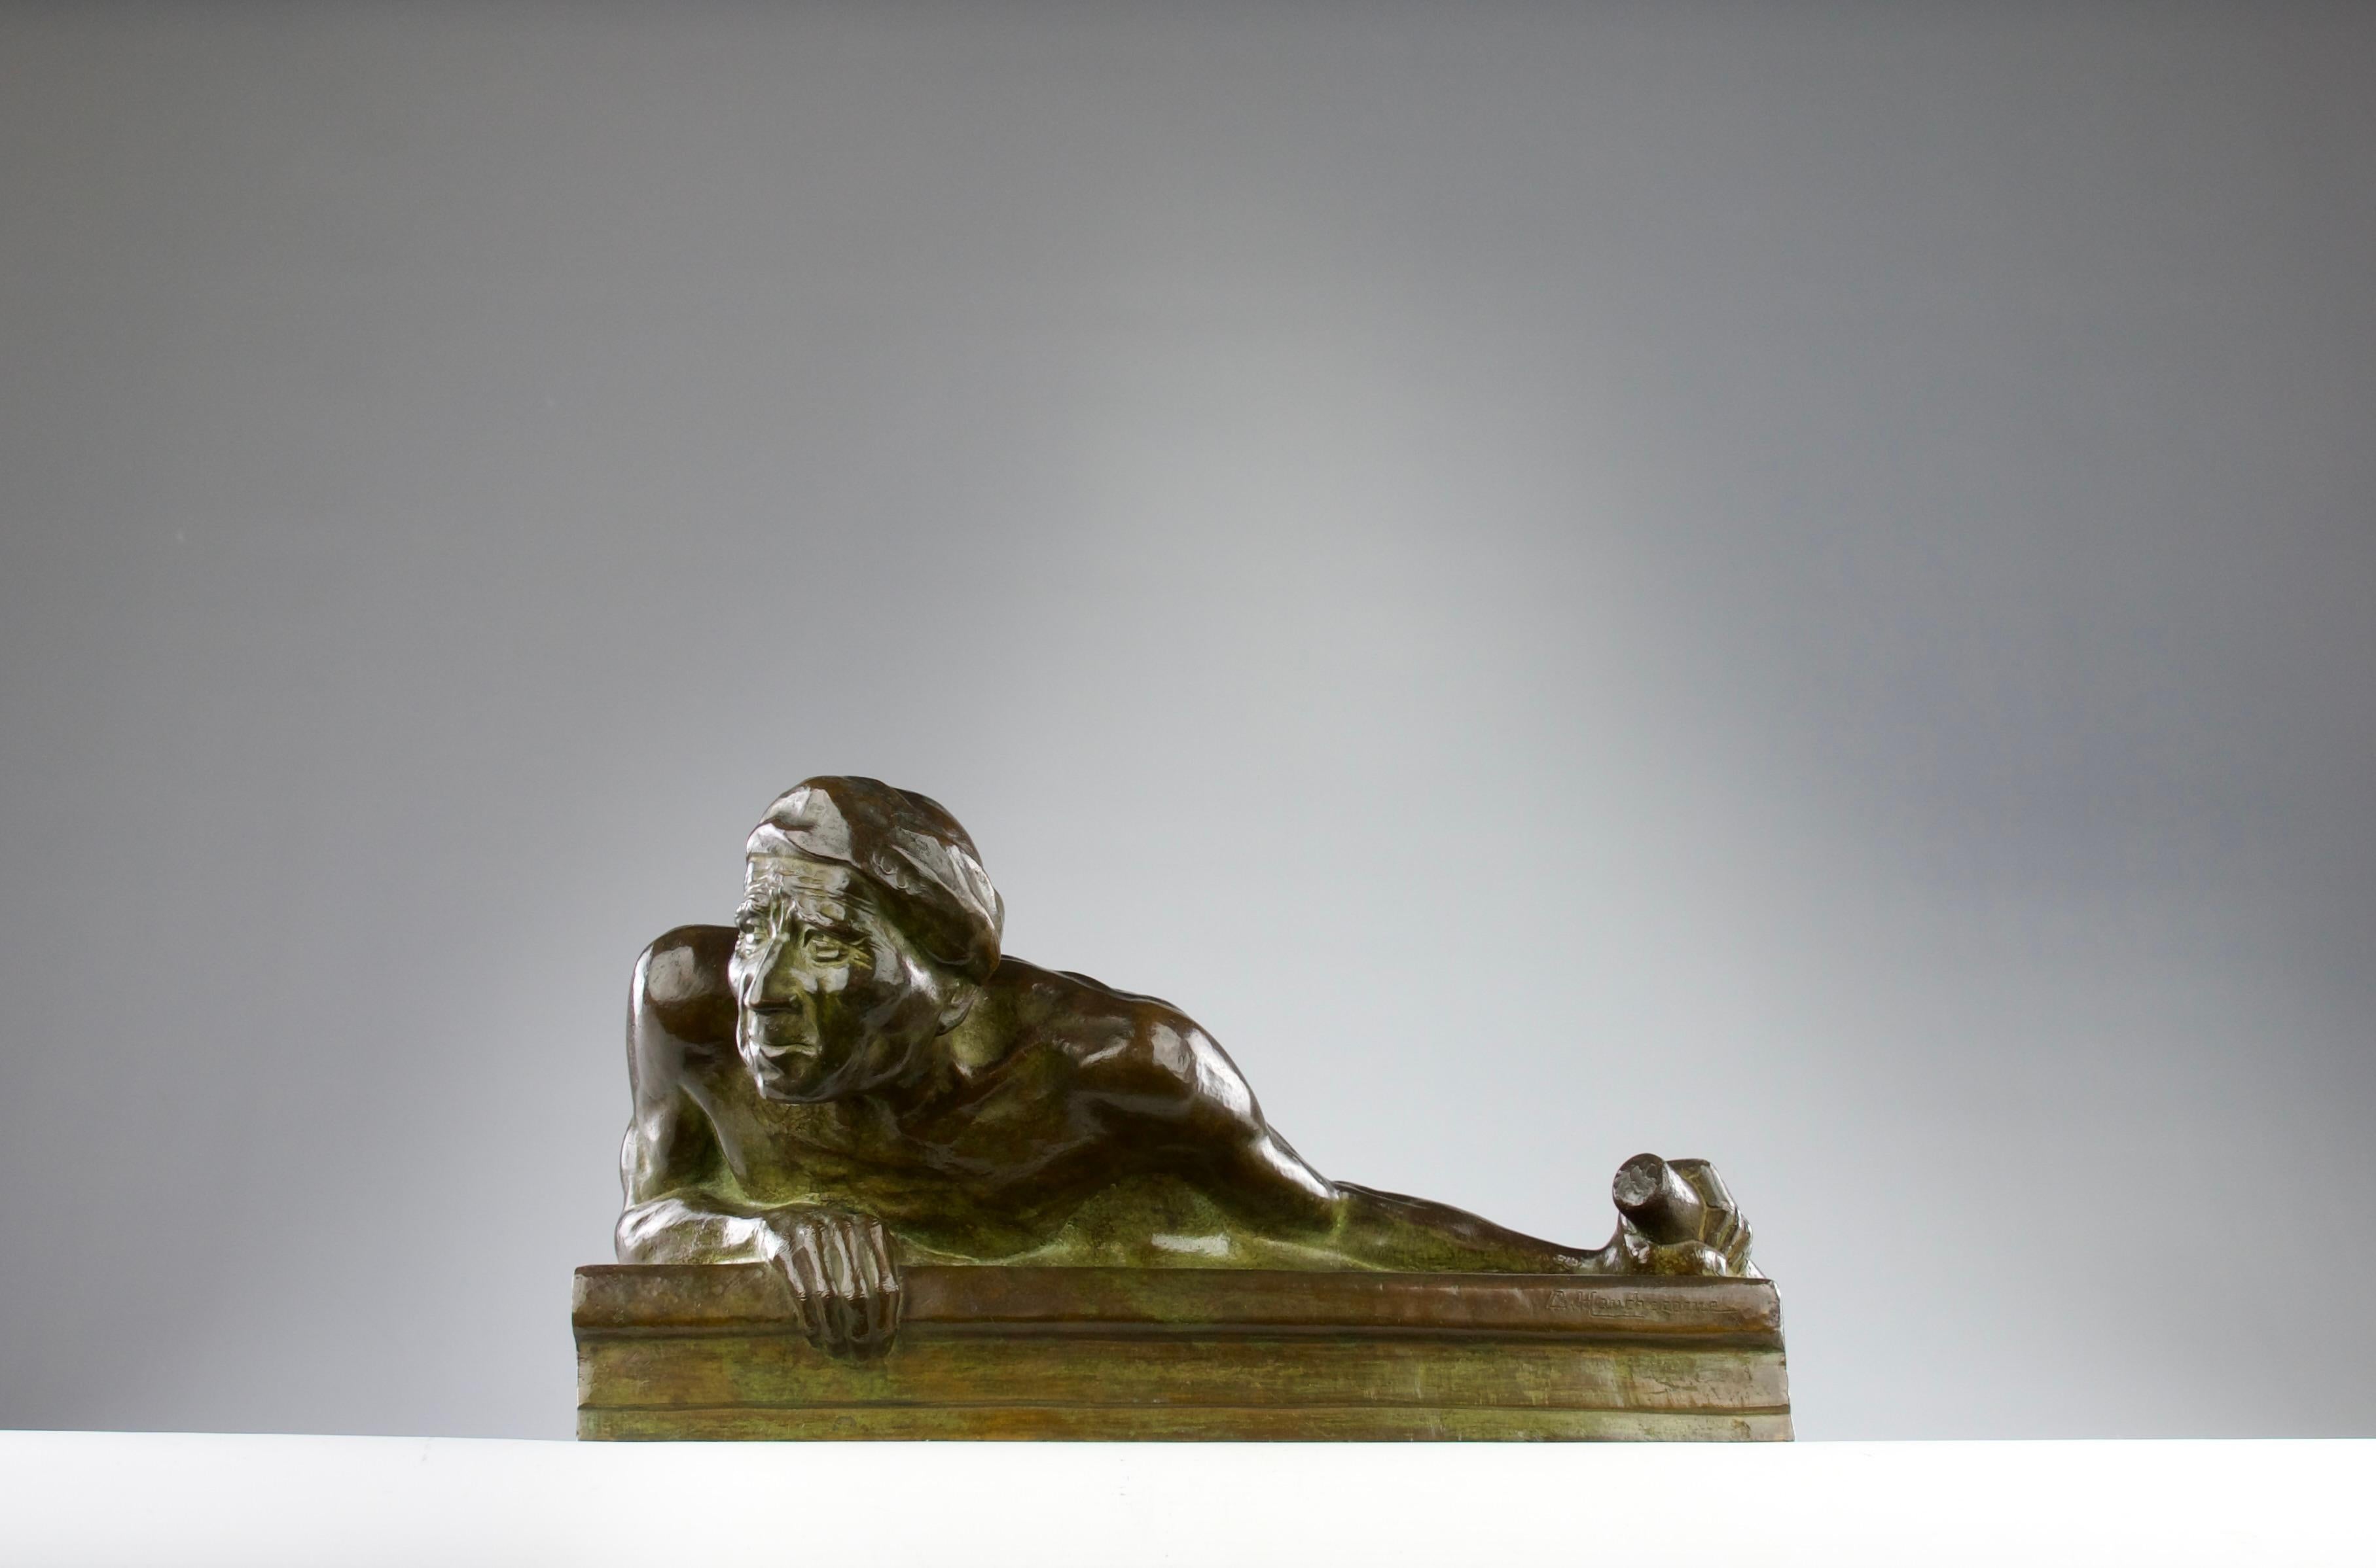 Hervorragende Bronzeskulptur mit grüner Patina von Gaston Hauchecorne, Frankreich 1920er Jahre. Darstellung eines malaysischen Piraten, der sich mit einer Hand an der Reling eines Schiffes und mit der anderen am Steuer festhält. Schöne Details in